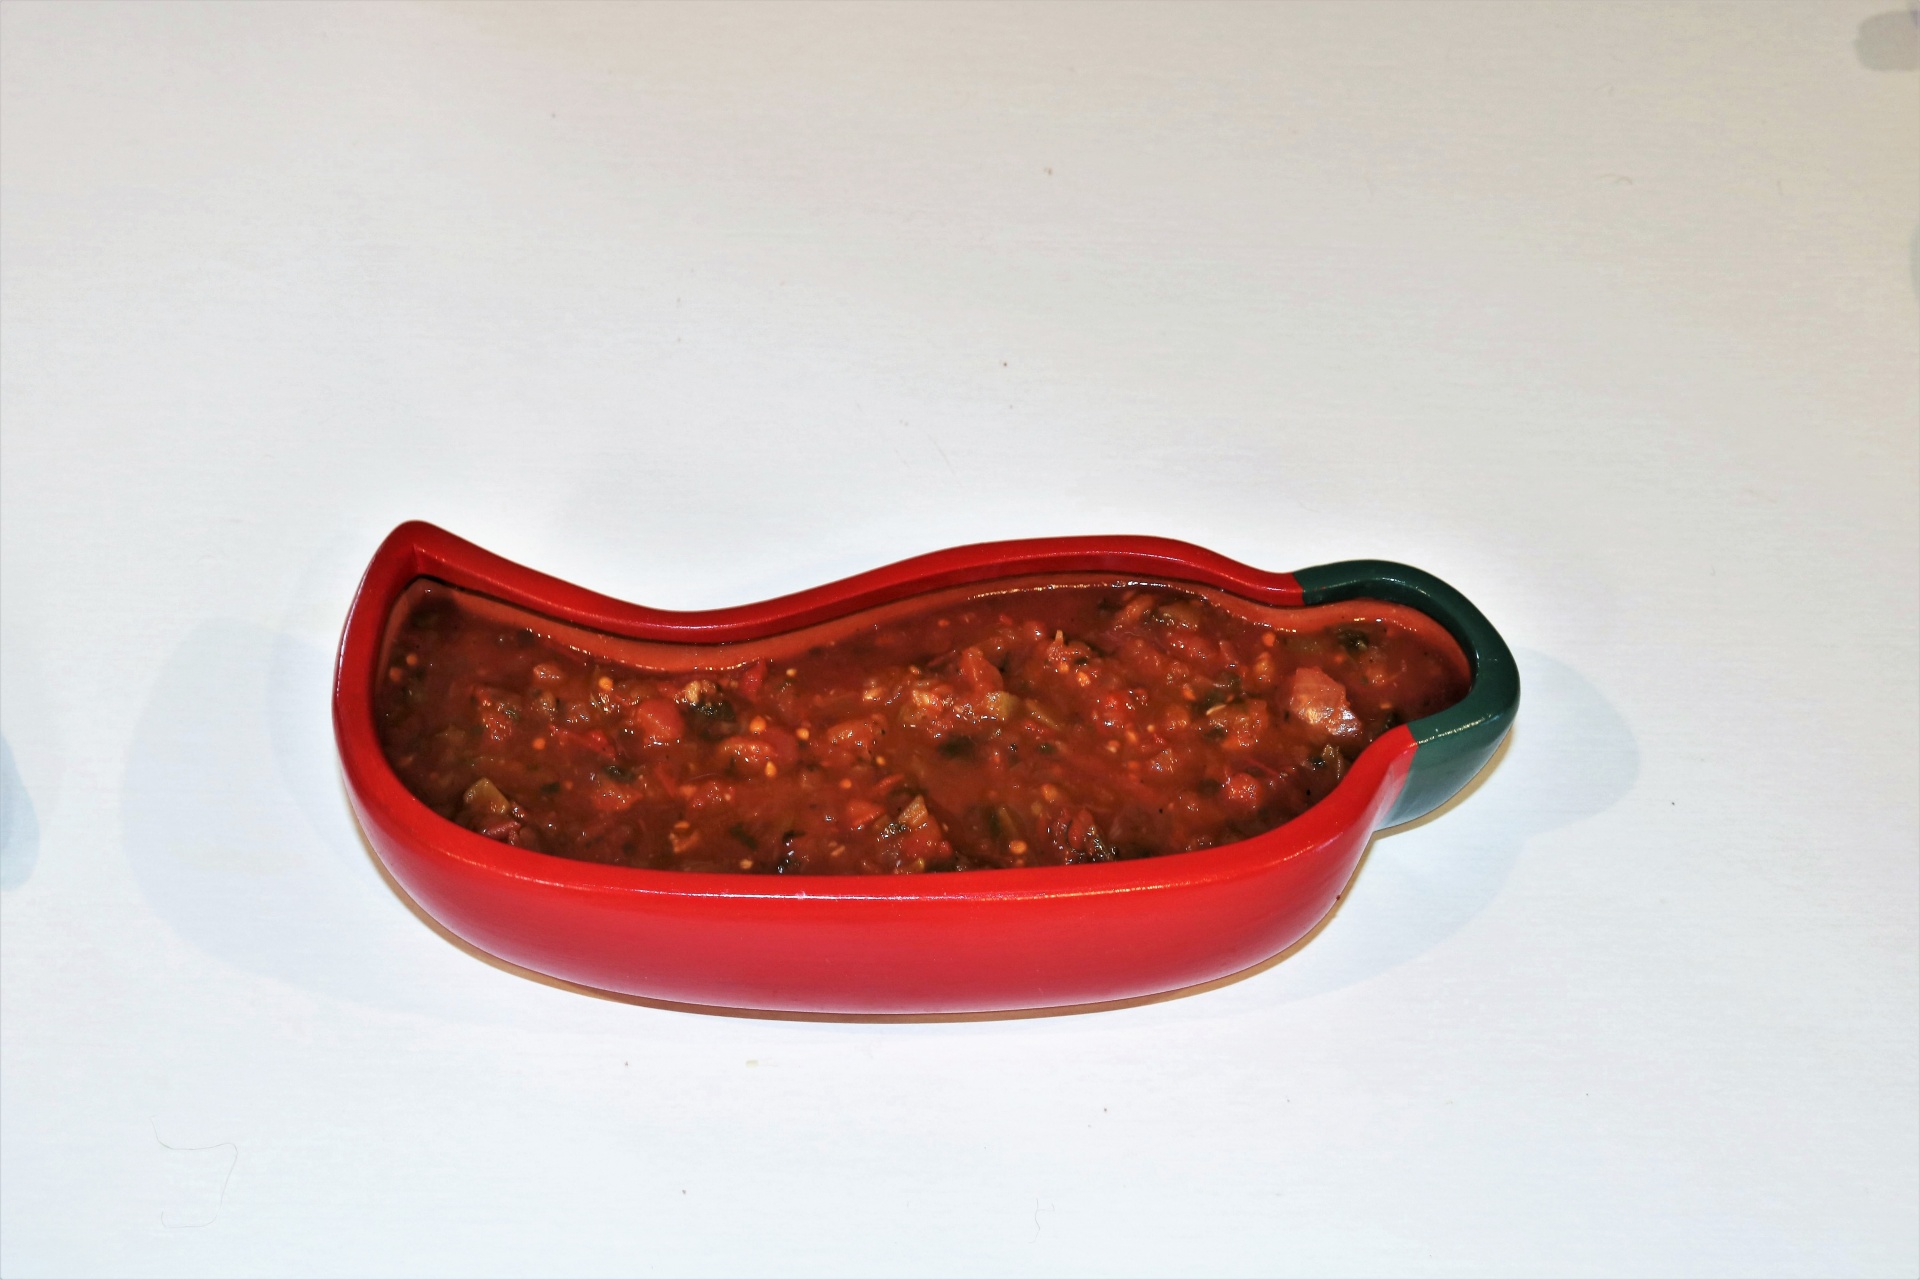 Picante Sauce In Chili Pepper Bowl